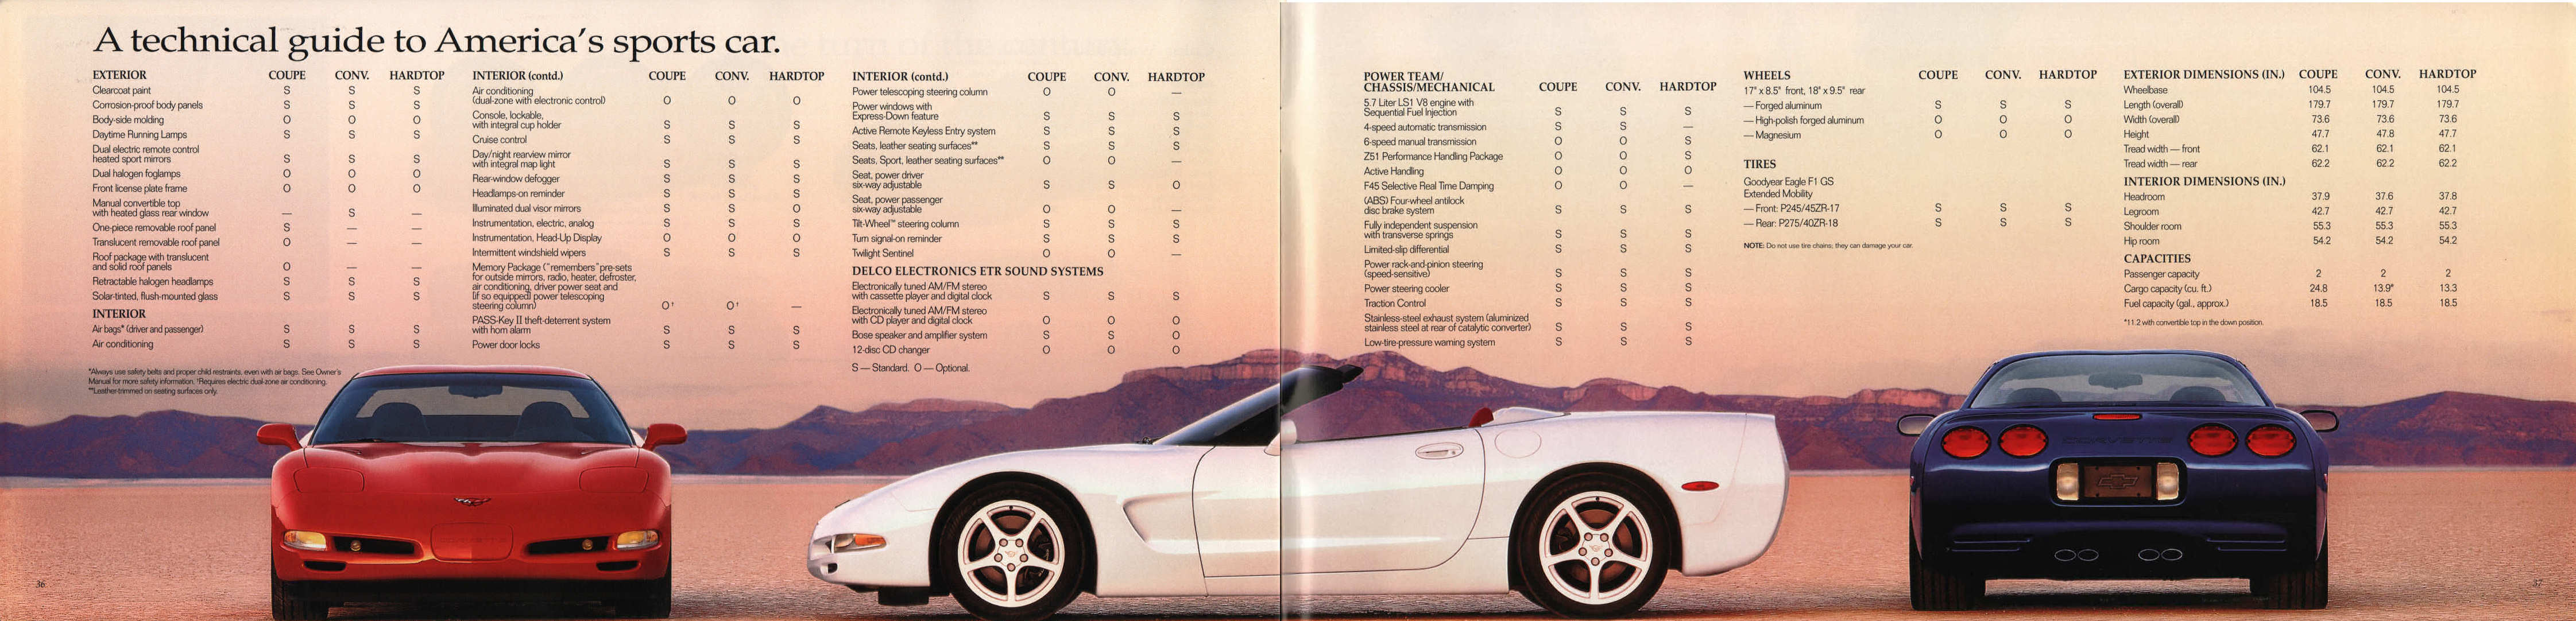 2000_Chevrolet_Corvette-36-37